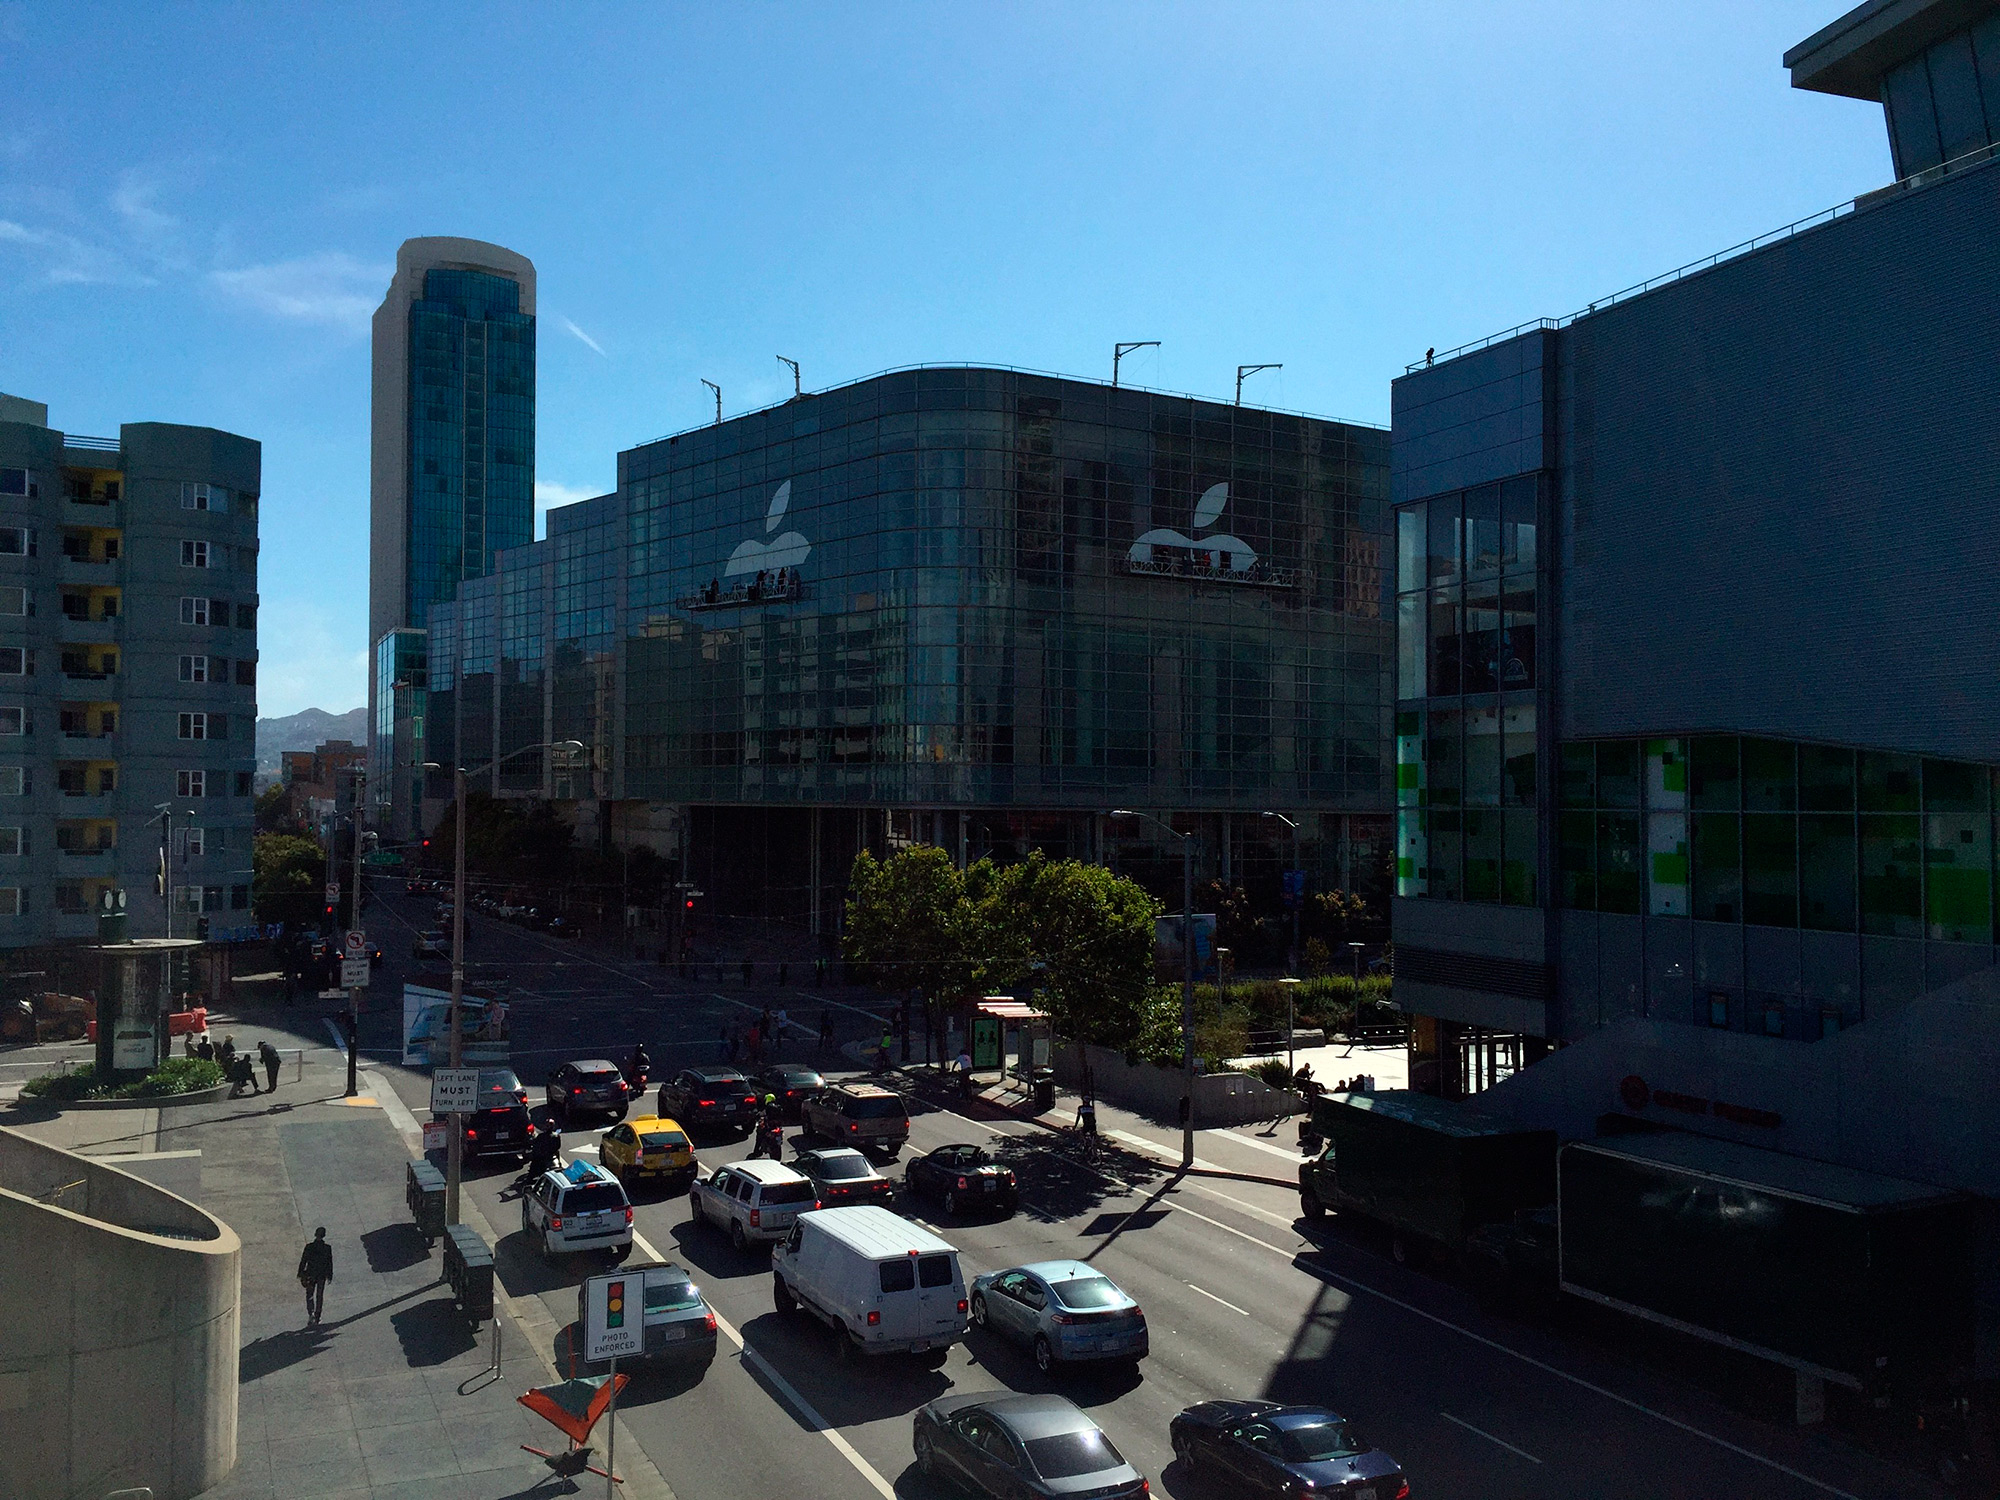 Adesivagem do Moscone para a WWDC 2015 avançando